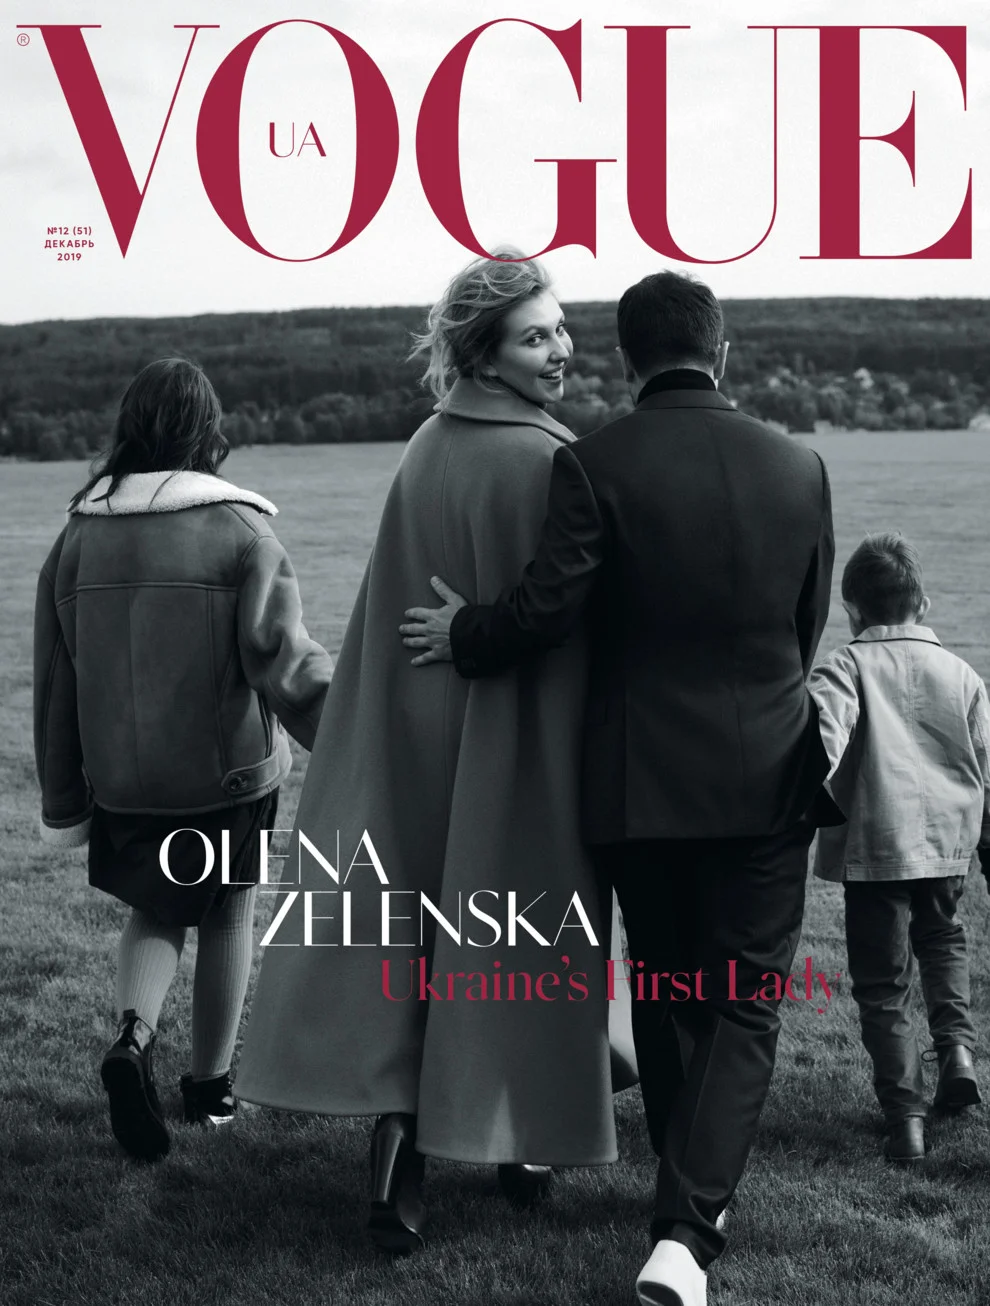 Первая леди Украины снялась для обложки Vogue, показав себя с неизвестной стороны - фото 457396